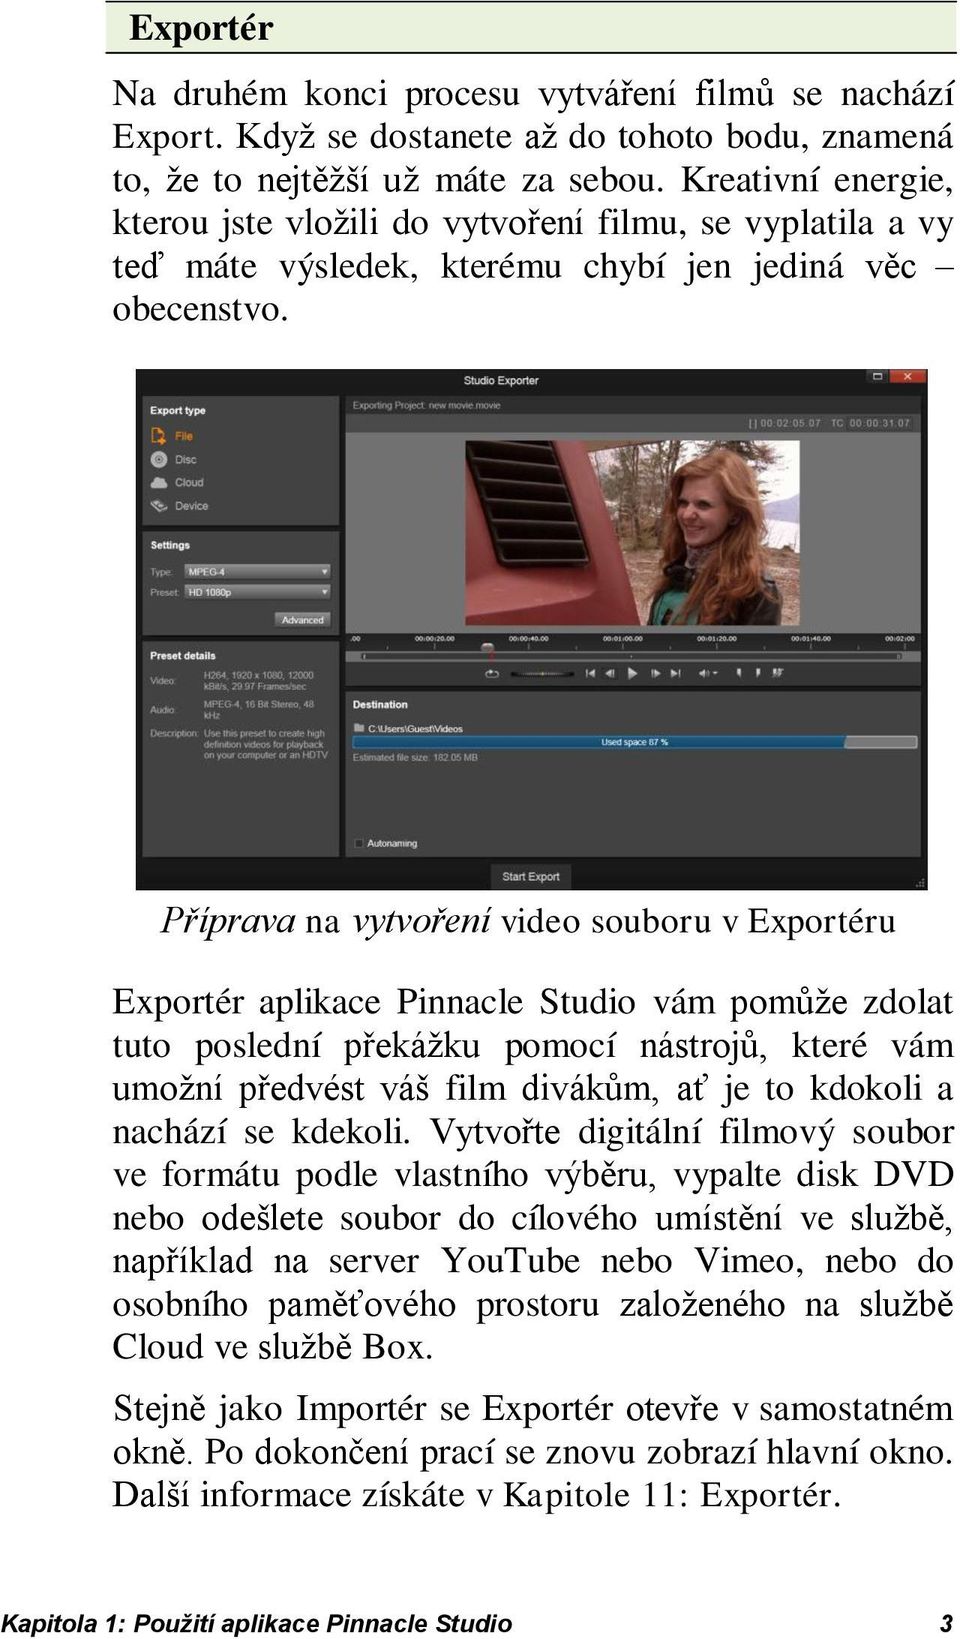 Příprava na vytvoření video souboru v Exportéru Exportér aplikace Pinnacle Studio vám pomůže zdolat tuto poslední překážku pomocí nástrojů, které vám umožní předvést váš film divákům, ať je to